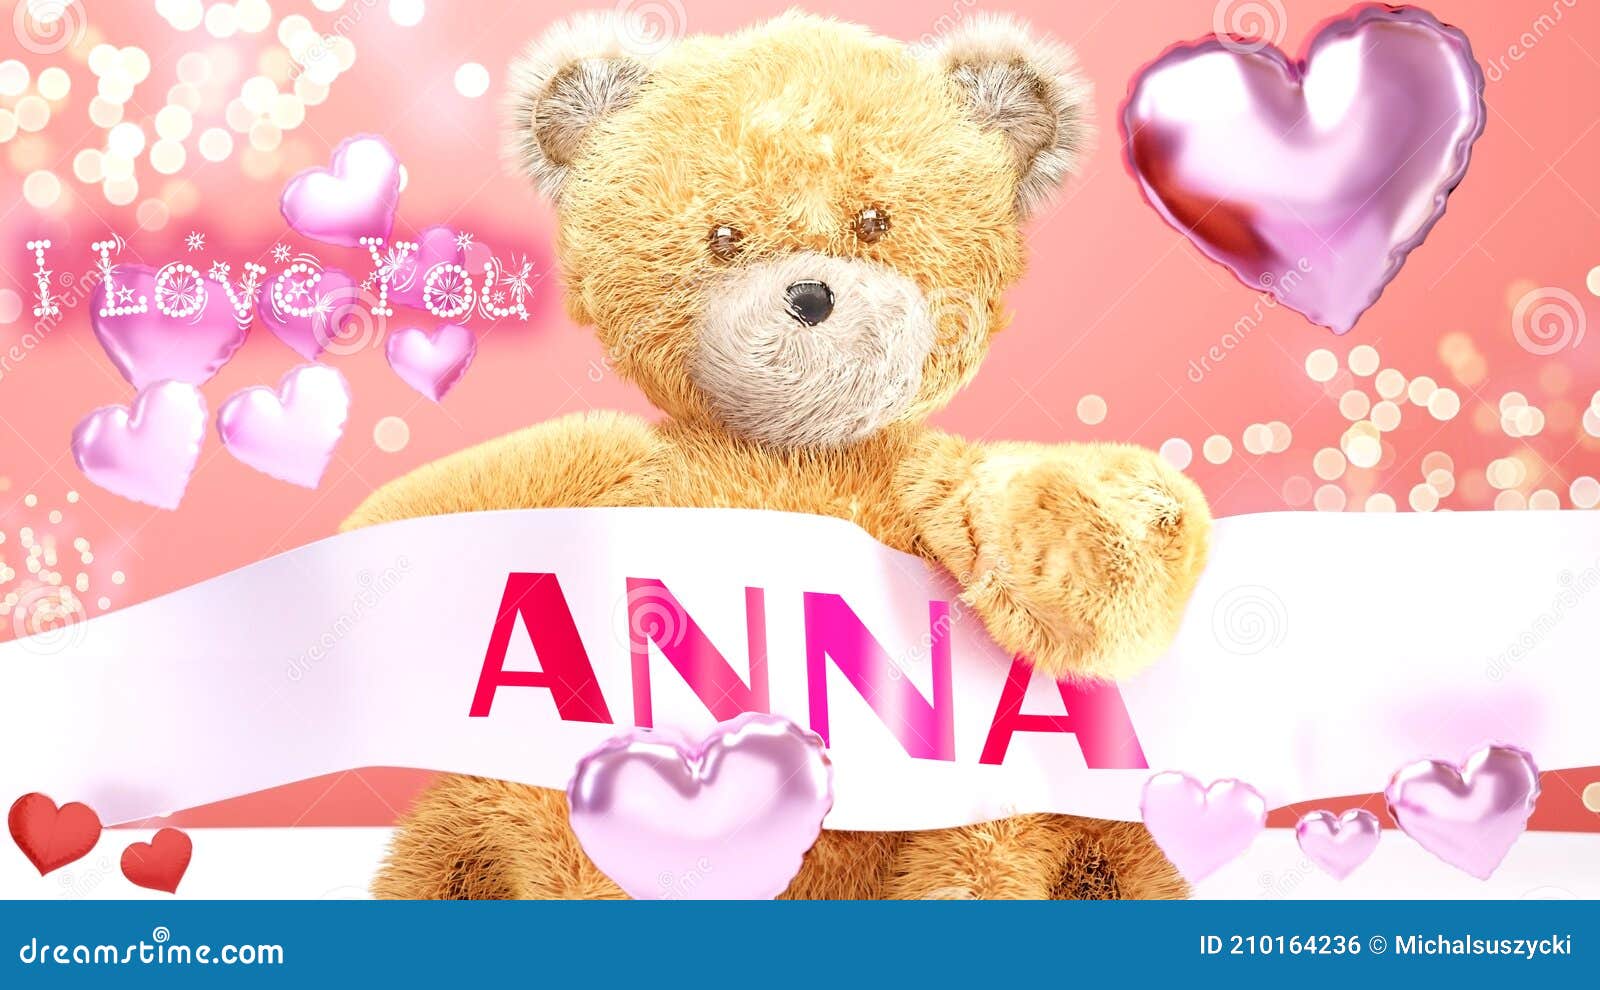 I Love You Anna - Cute and Sweet Teddy Bear on a Wedding ...